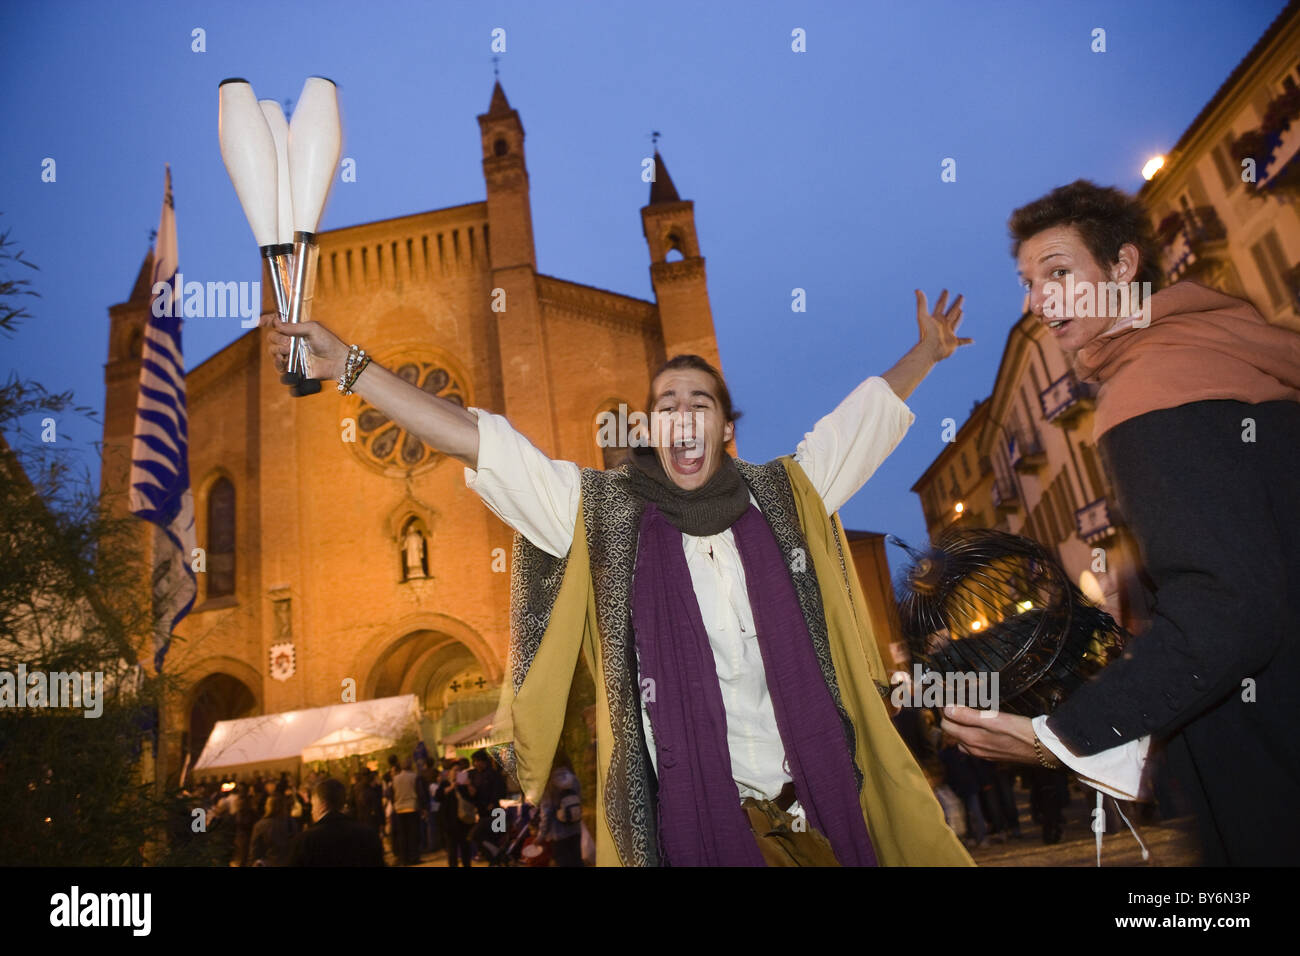 Jongleur vor der Kathedrale während des Festivals, Piazza Risorgimento, Palio di Alba, Alba, Piemont, Italien Stockfoto